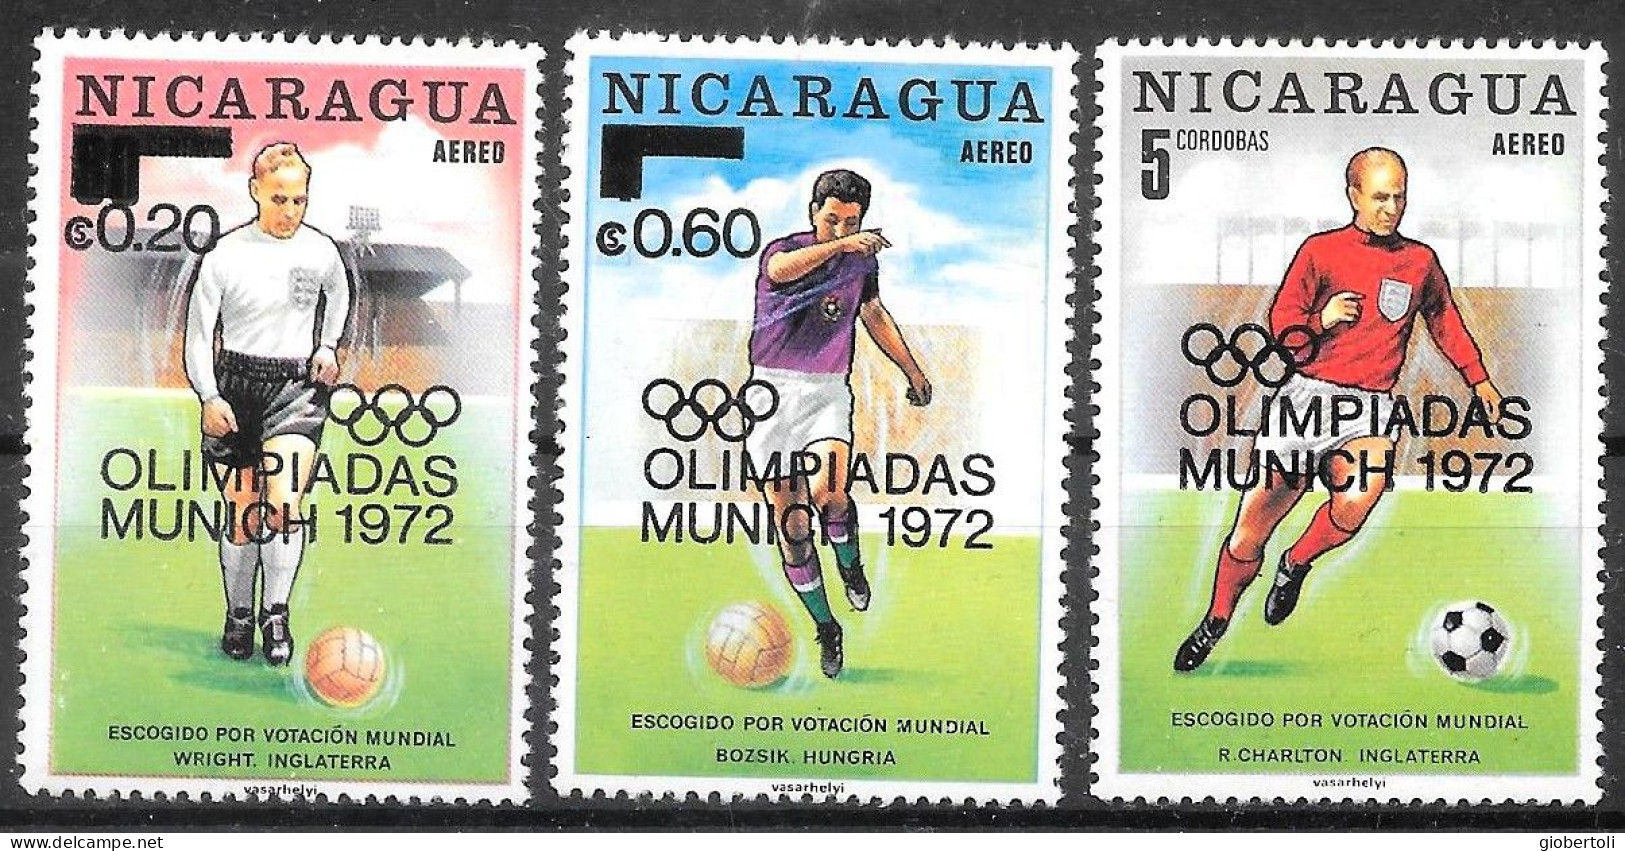 Nicaragua: Gioco Del Calcio, Football Game, Le Jeu Du Calcio - Sommer 1972: München